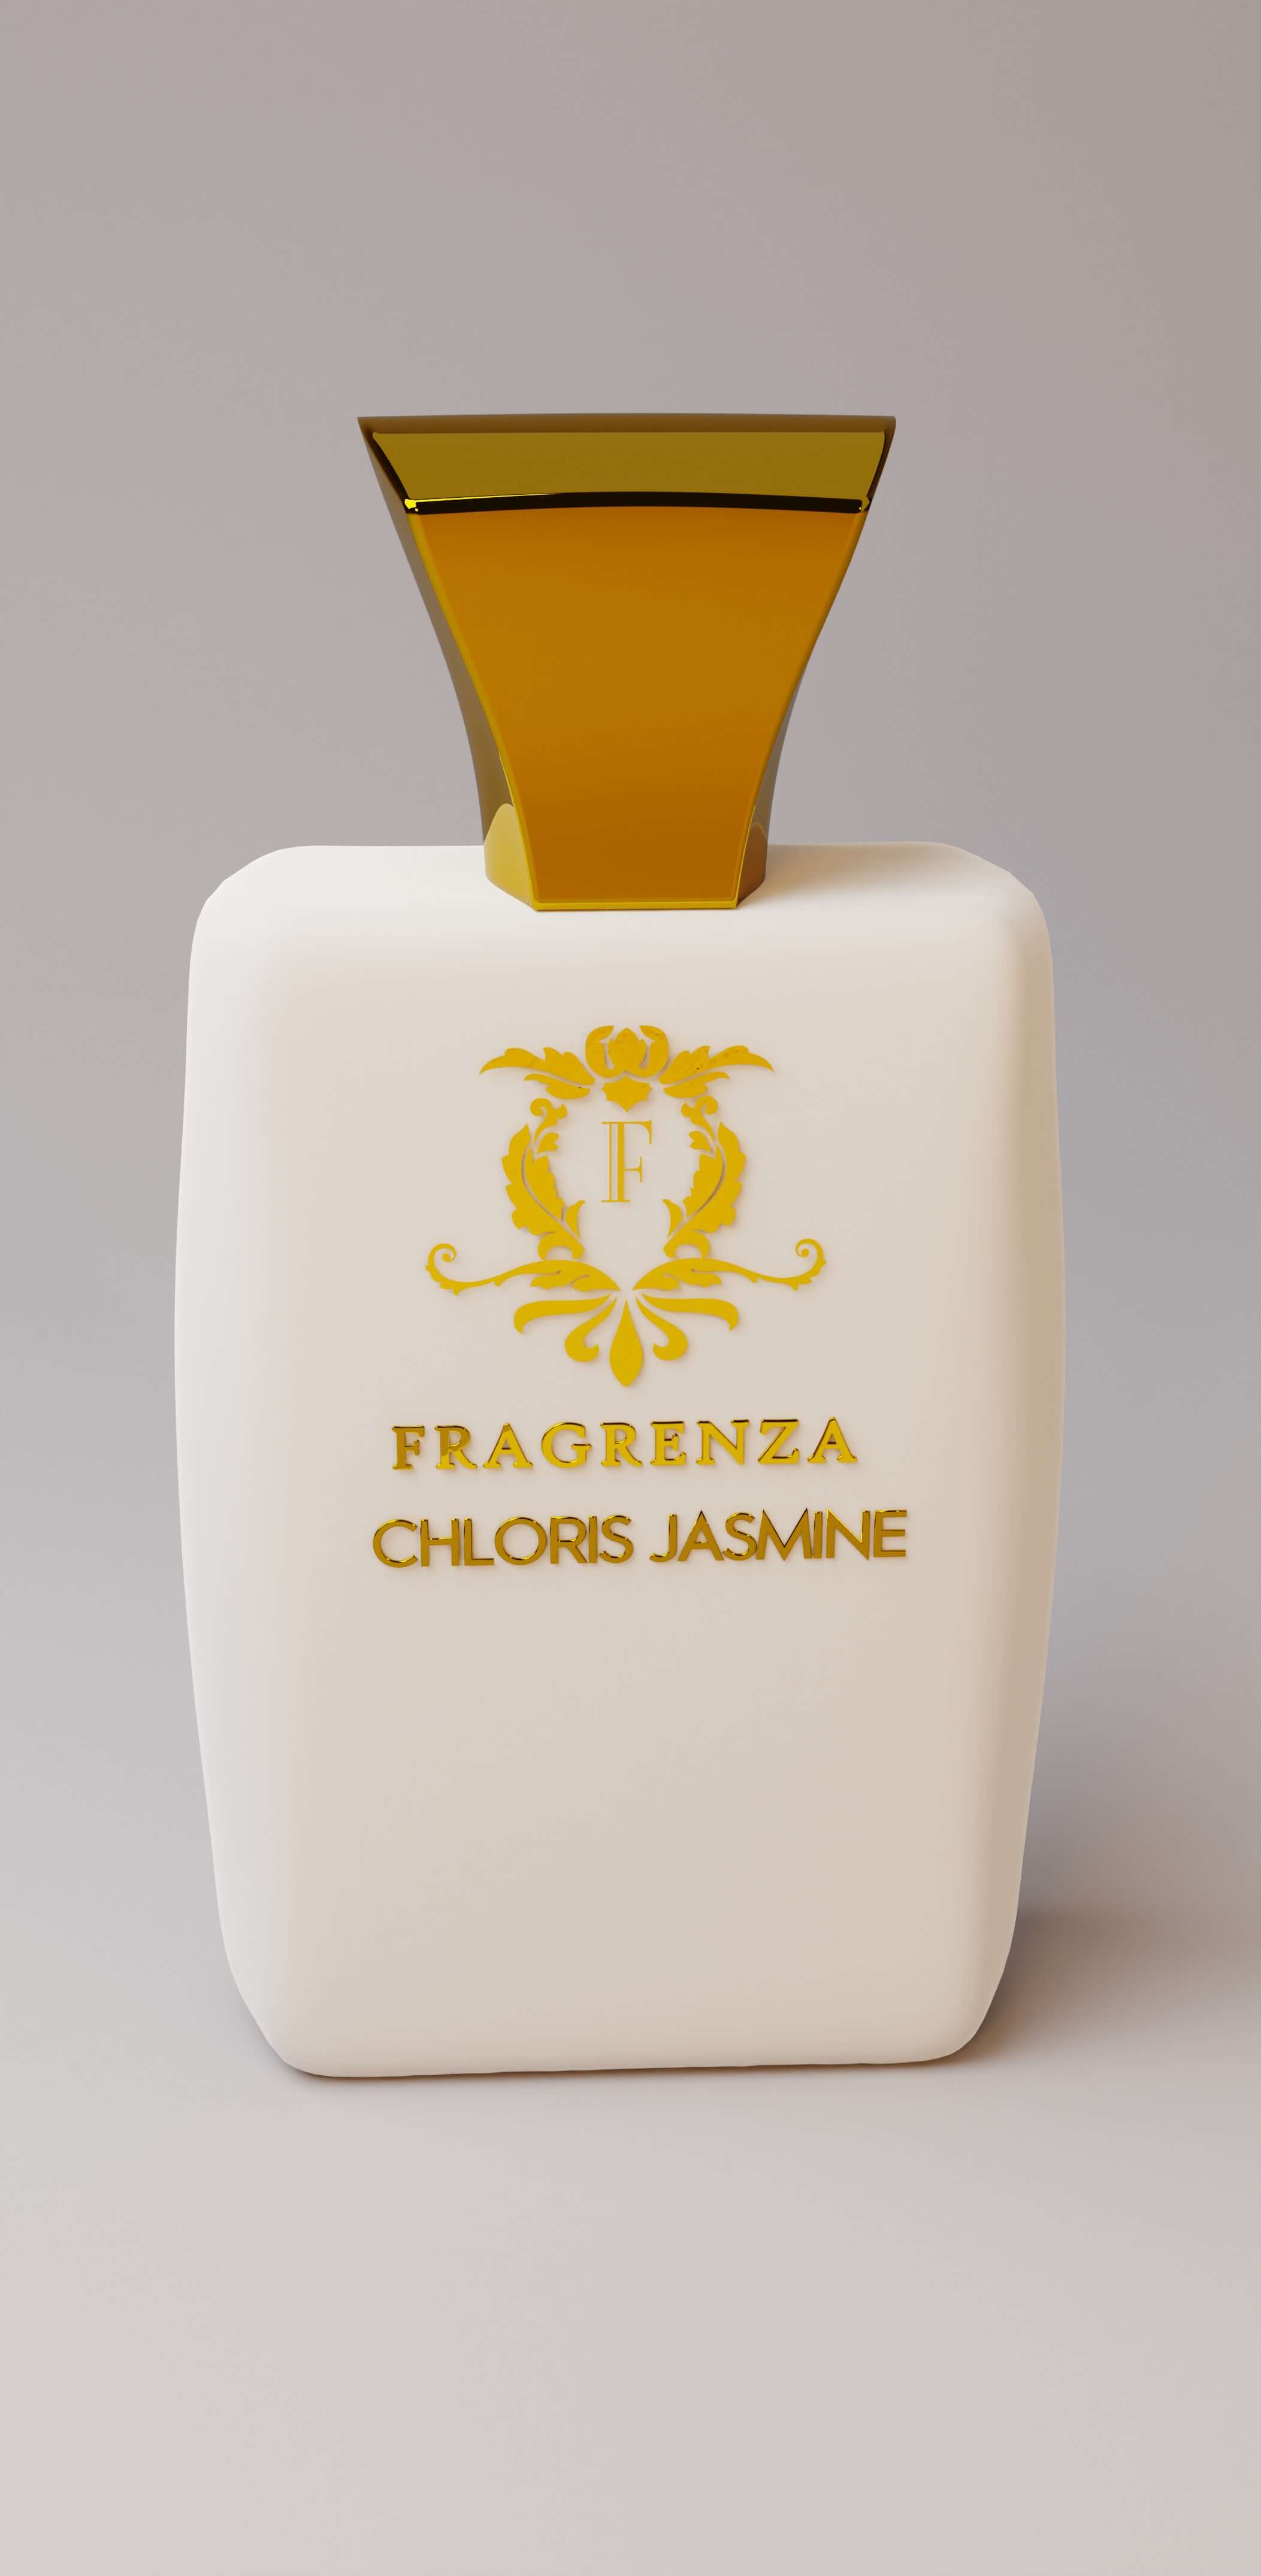 fragrance dupe website